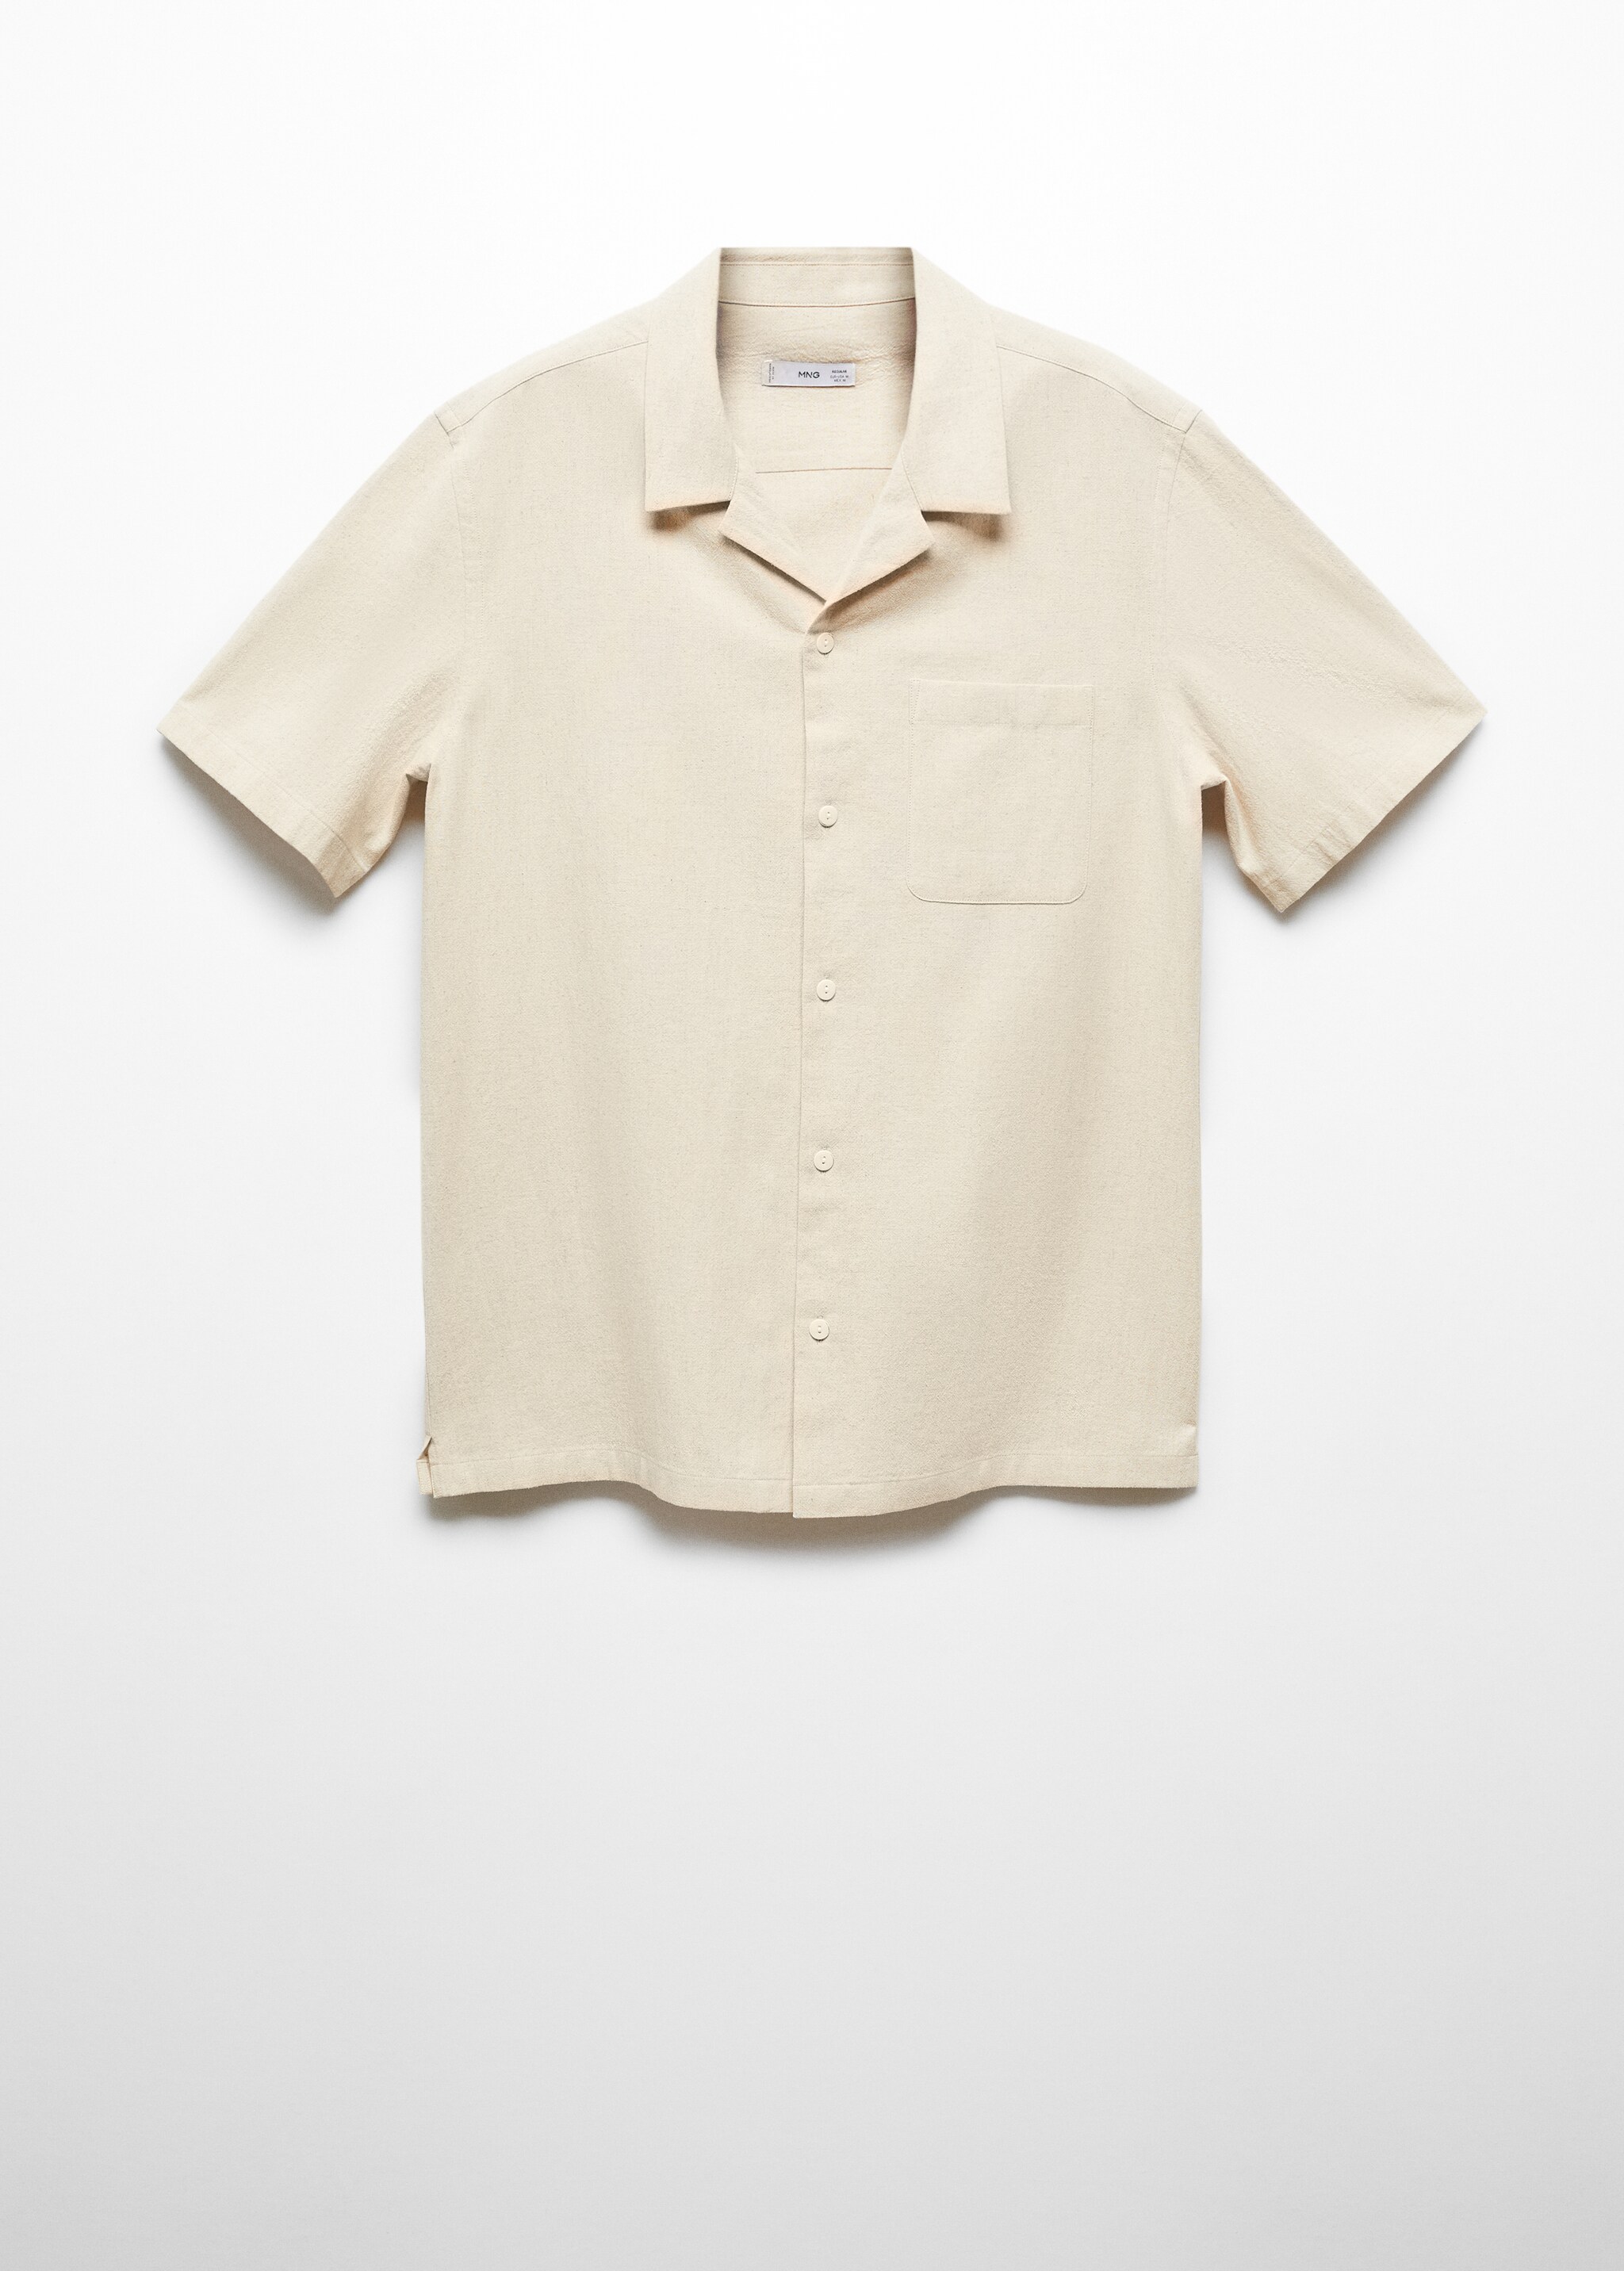 Camisa lino cuello bowling bolsillo - Artículo sin modelo